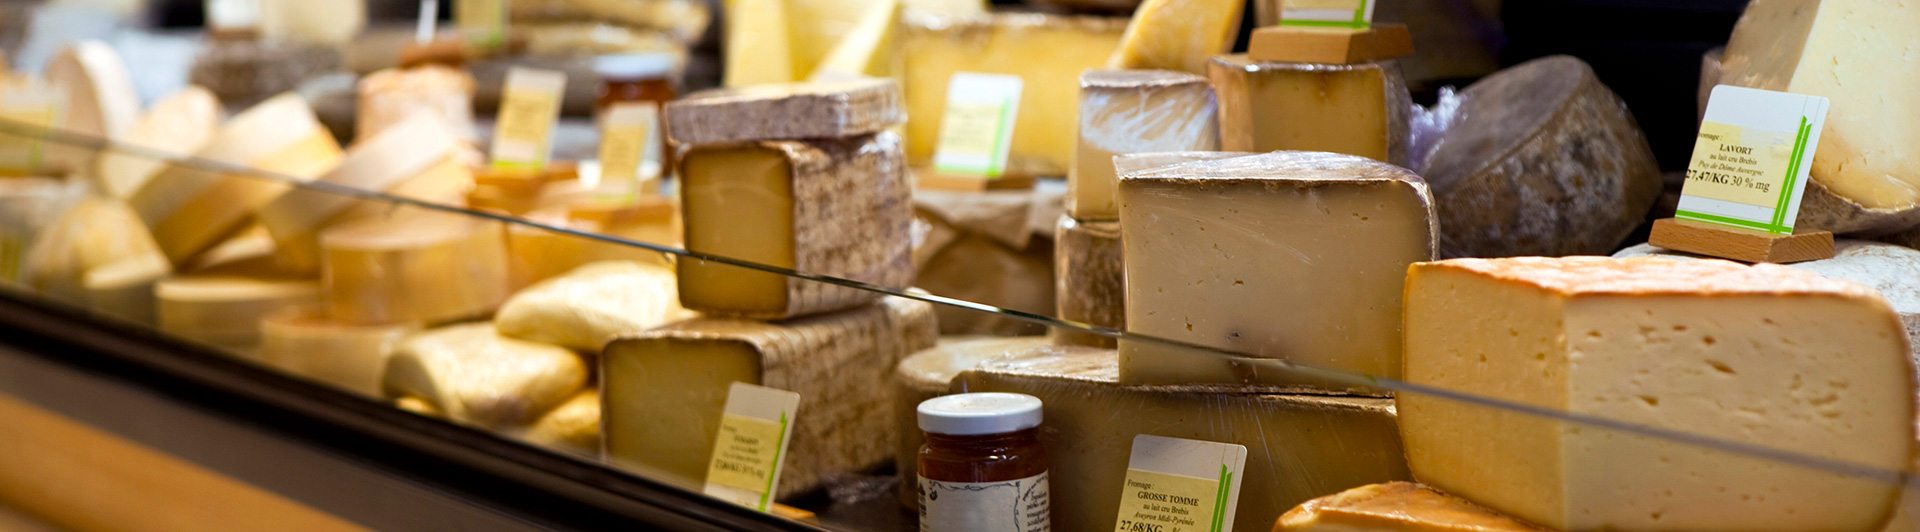 Visite guidée gourmet Montmartre fromage et vins